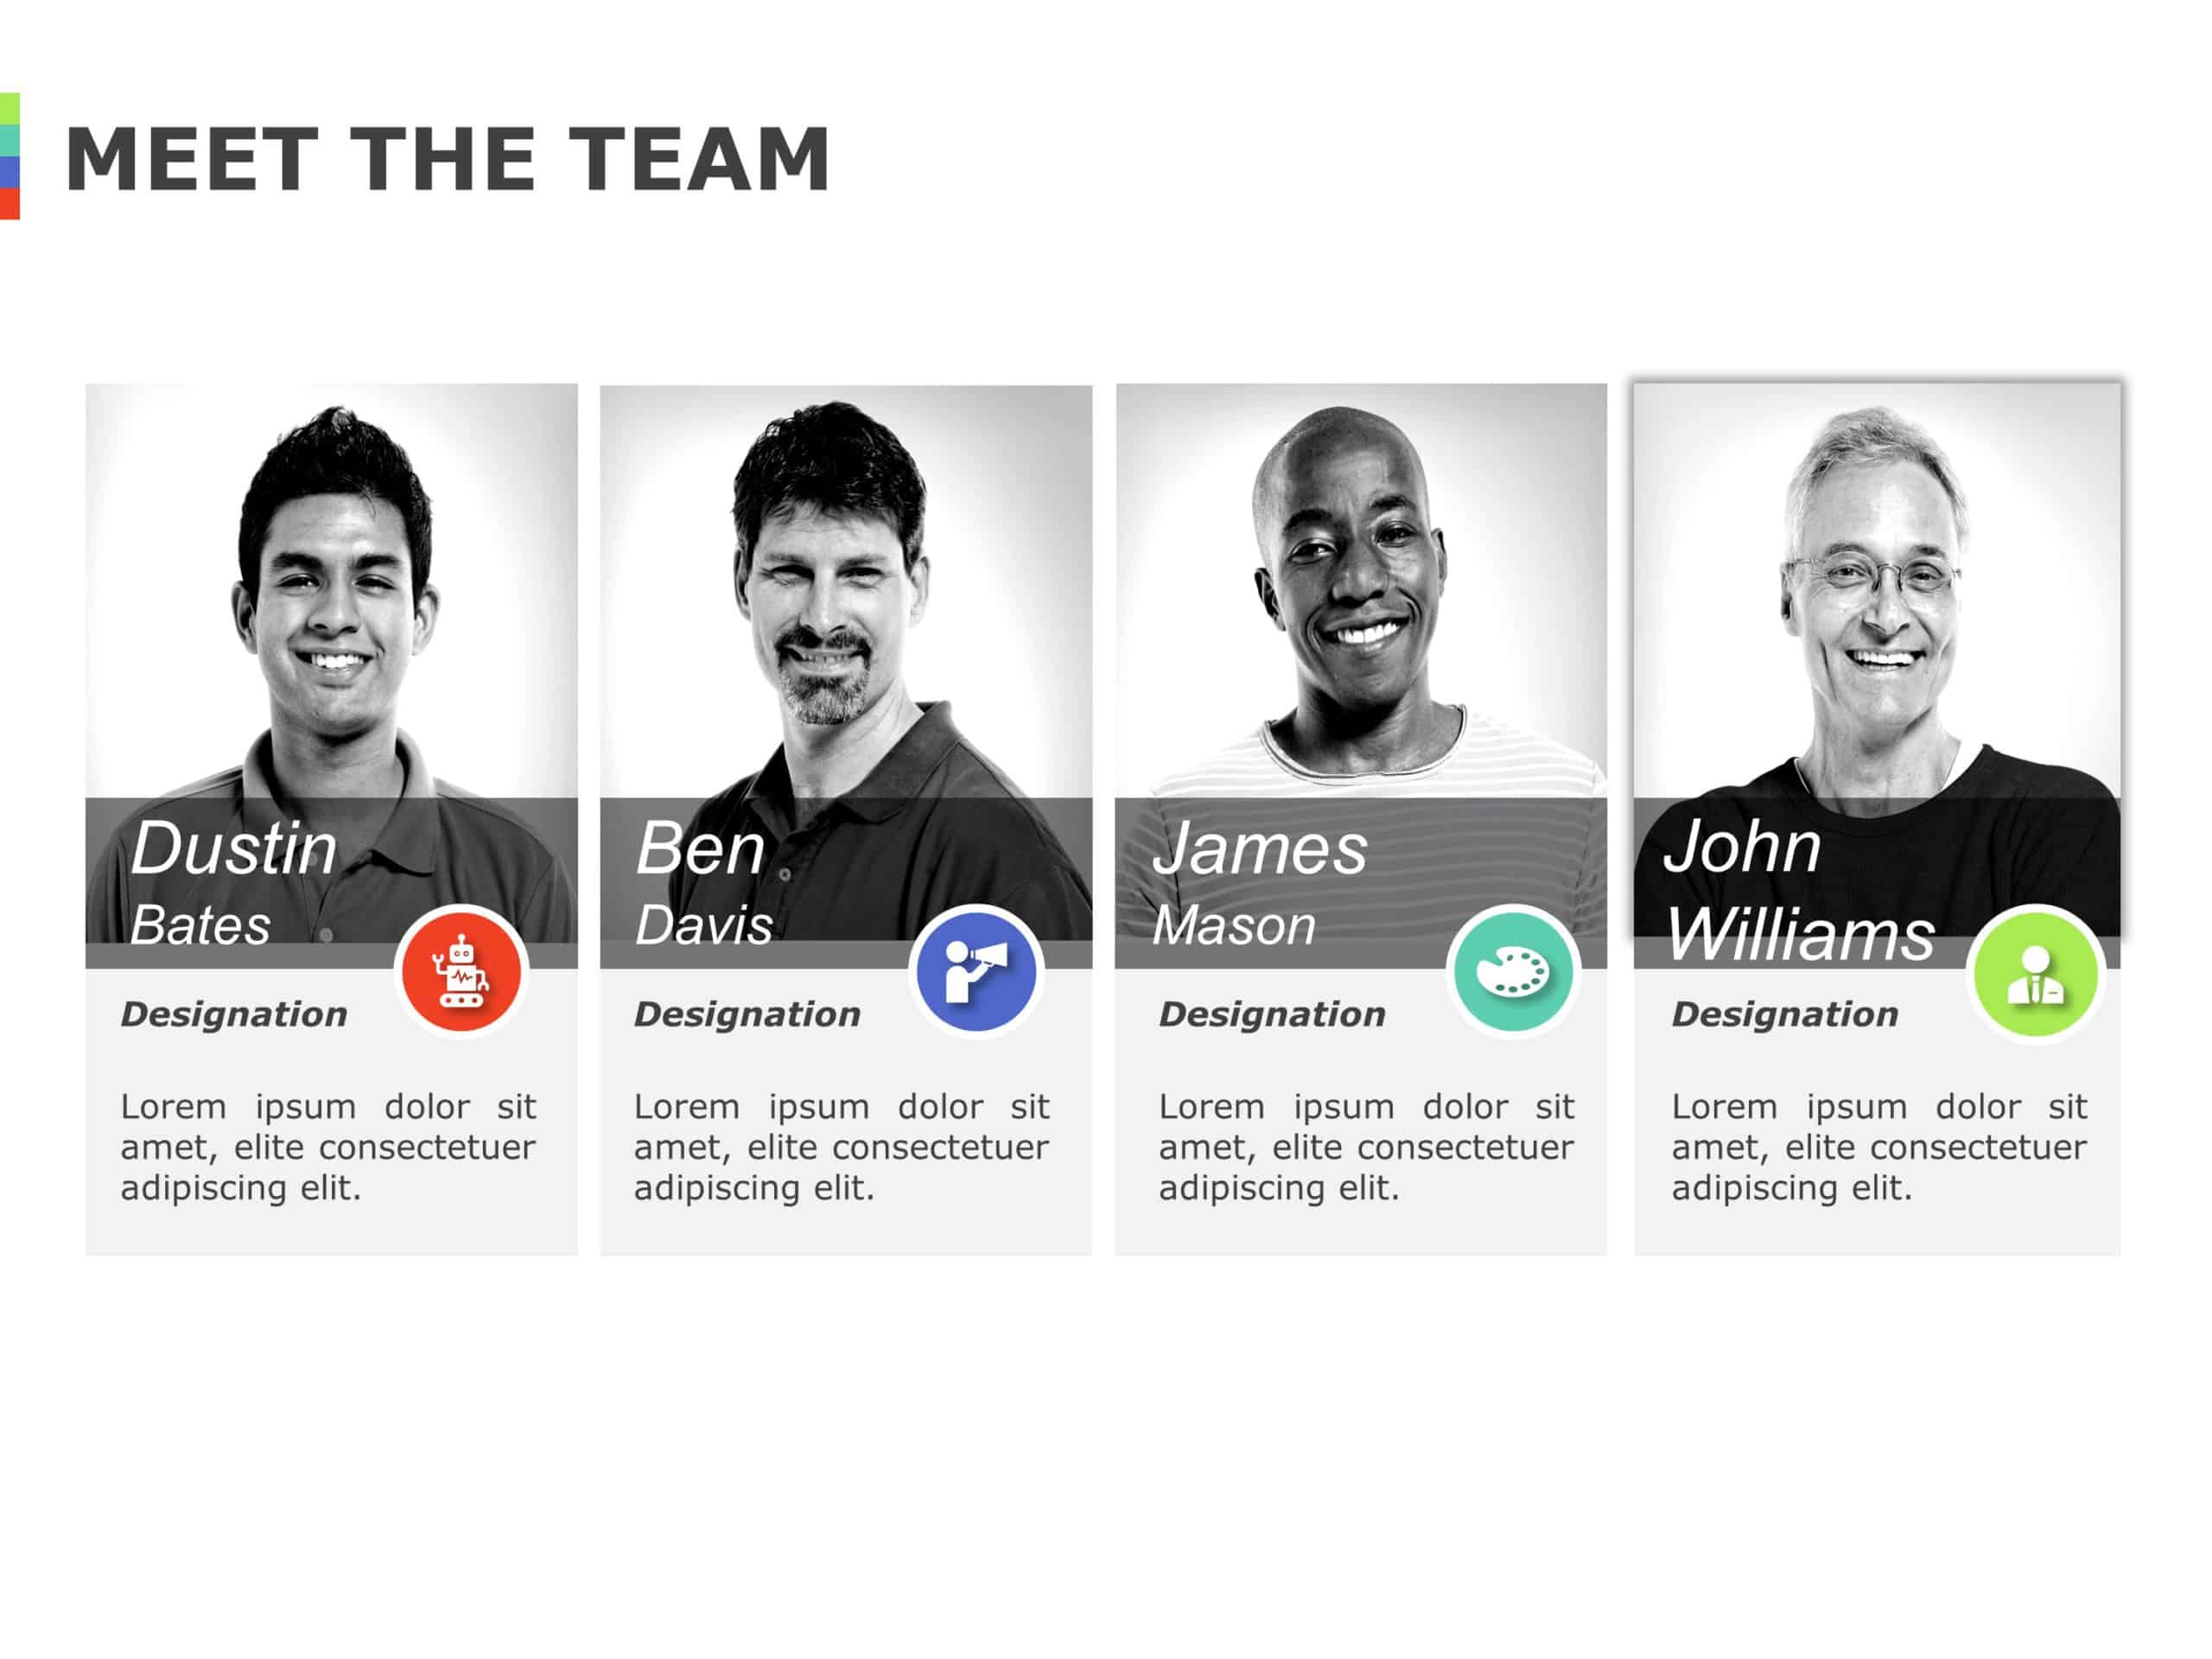 Meet the Team 04 PowerPoint Template